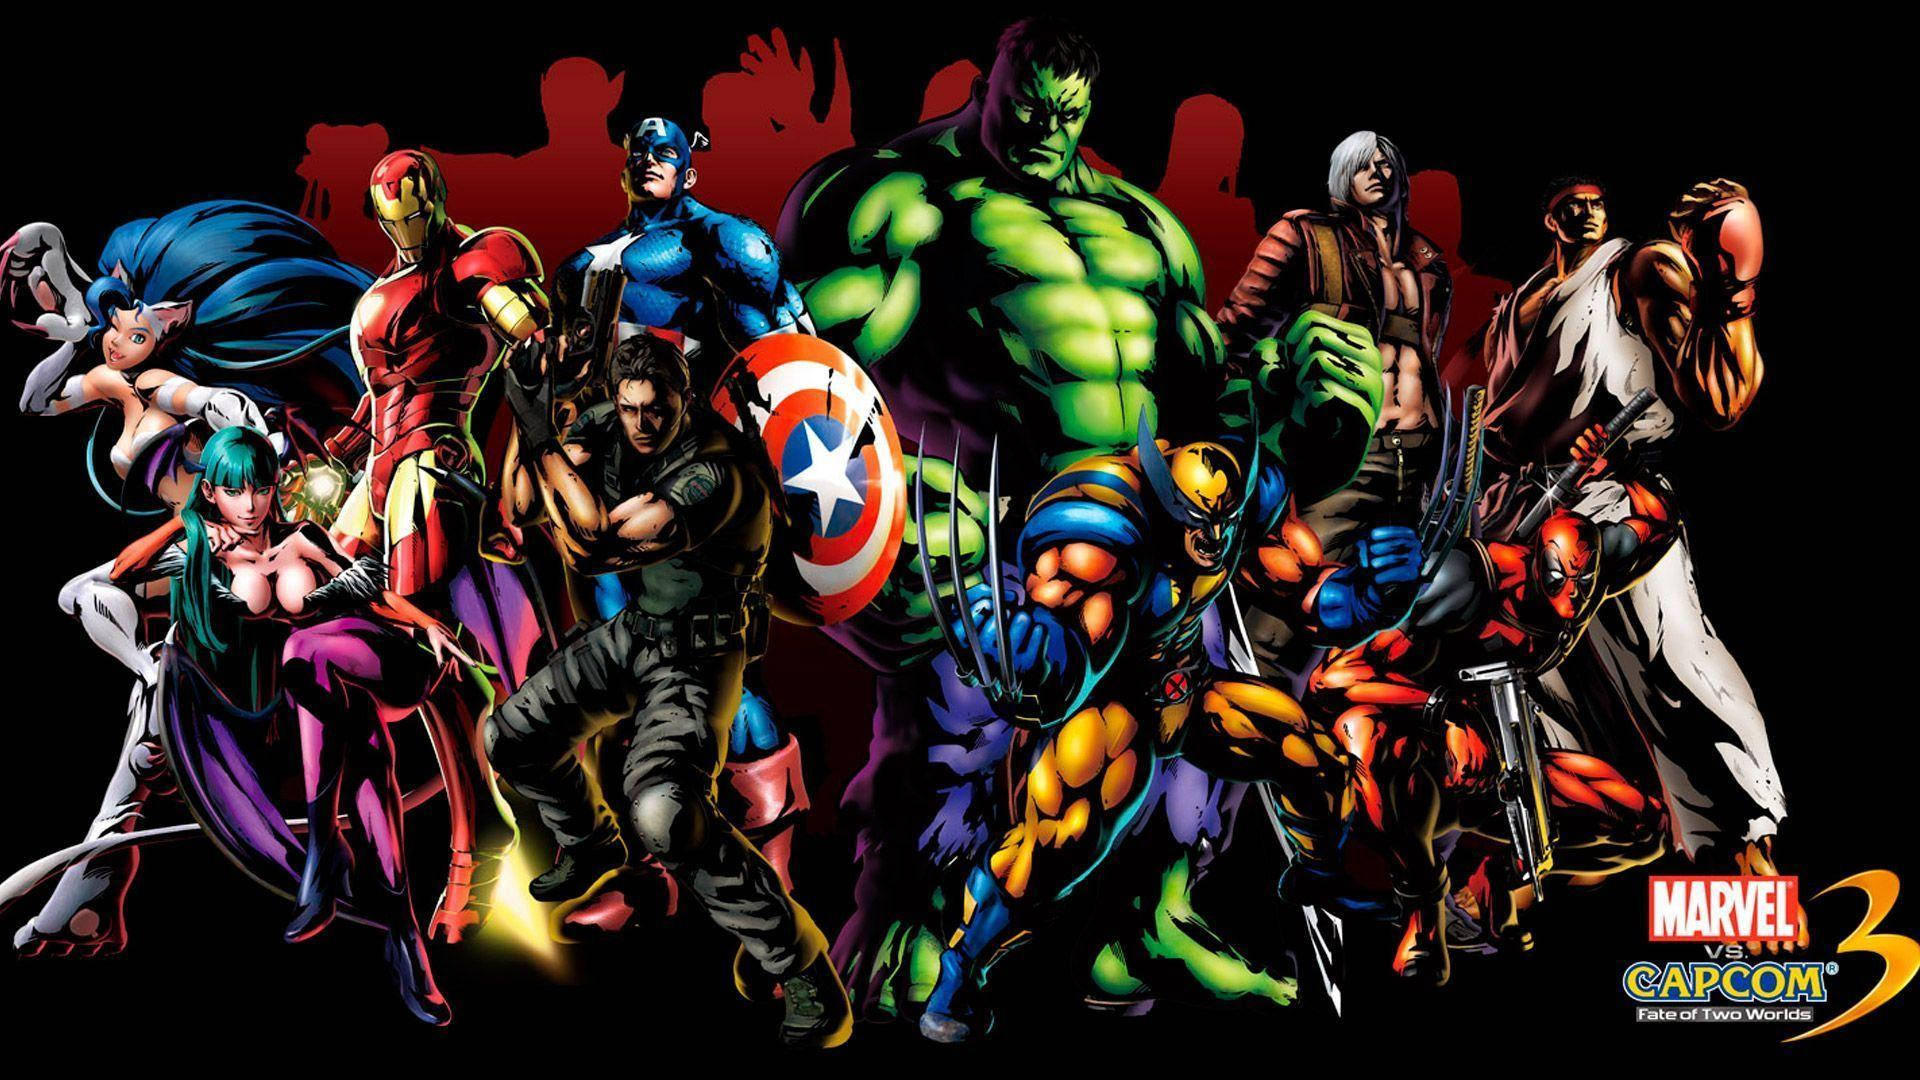 Marvel Superheroes Capcom 3 Wallpaper